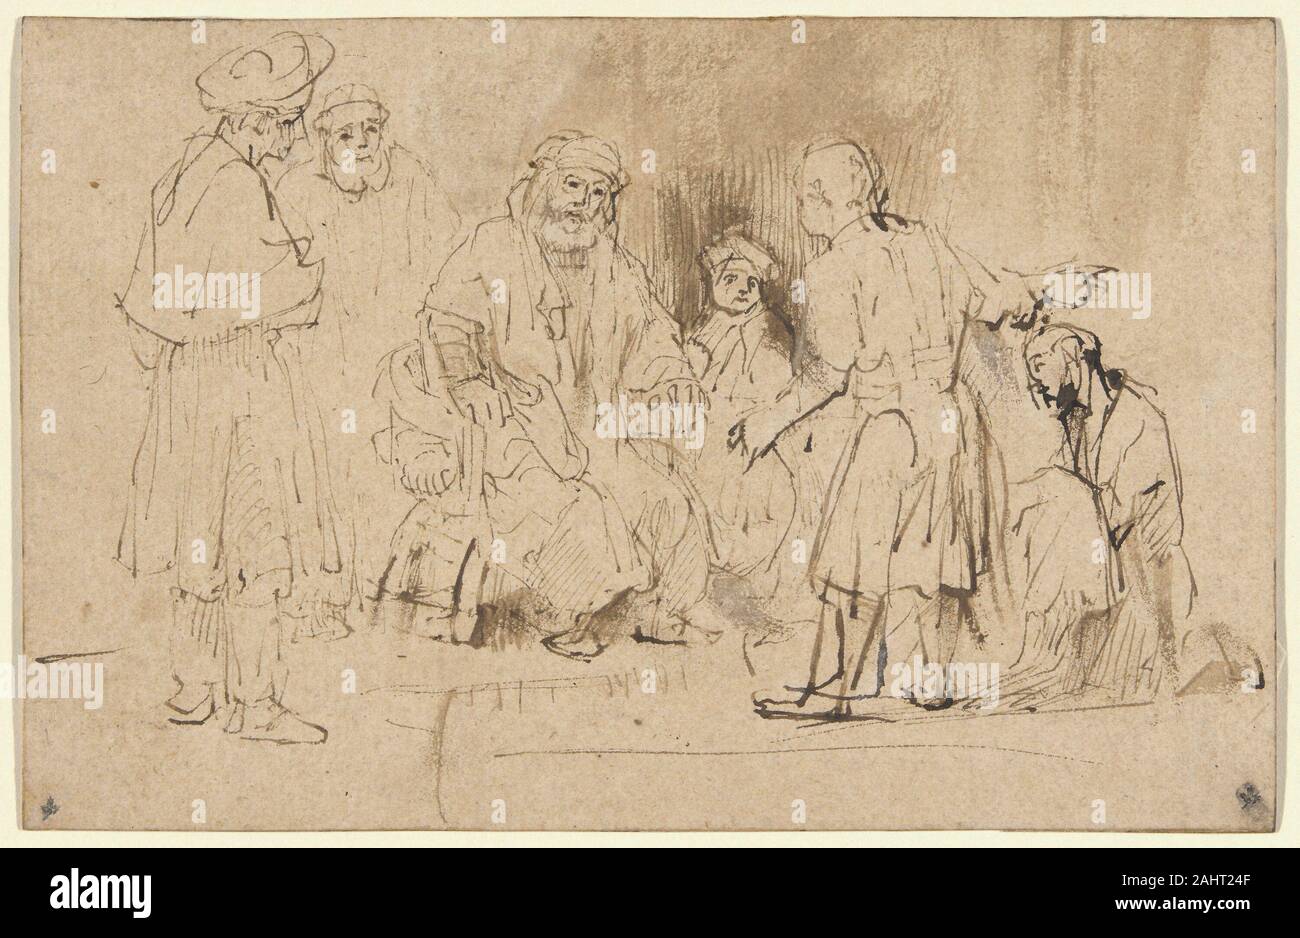 Aert De Gelder. Giacobbe mostrato Giuseppe cappotto Blood-Stained. 1655-1665. Paesi Bassi. Penna e inchiostro bruno, con spazzola e lavaggio marrone con tocchi di bianco opaco, acquerello su buff carta vergata, stabilite su avorio carta vergata Aert de Gelder ha studiato con Rembrandt nell' ultimo decennio del maestro della vita e portato alla sua tradizione nel XVIII secolo. In De Gelder il trattamento di questo tema, così come nel suo stile di disegno, il giovane artista mostra qui una preferenza per il rapido, sommario approccio alla narrazione biblica che è stata favorita da Rembrandt stesso. Foto Stock